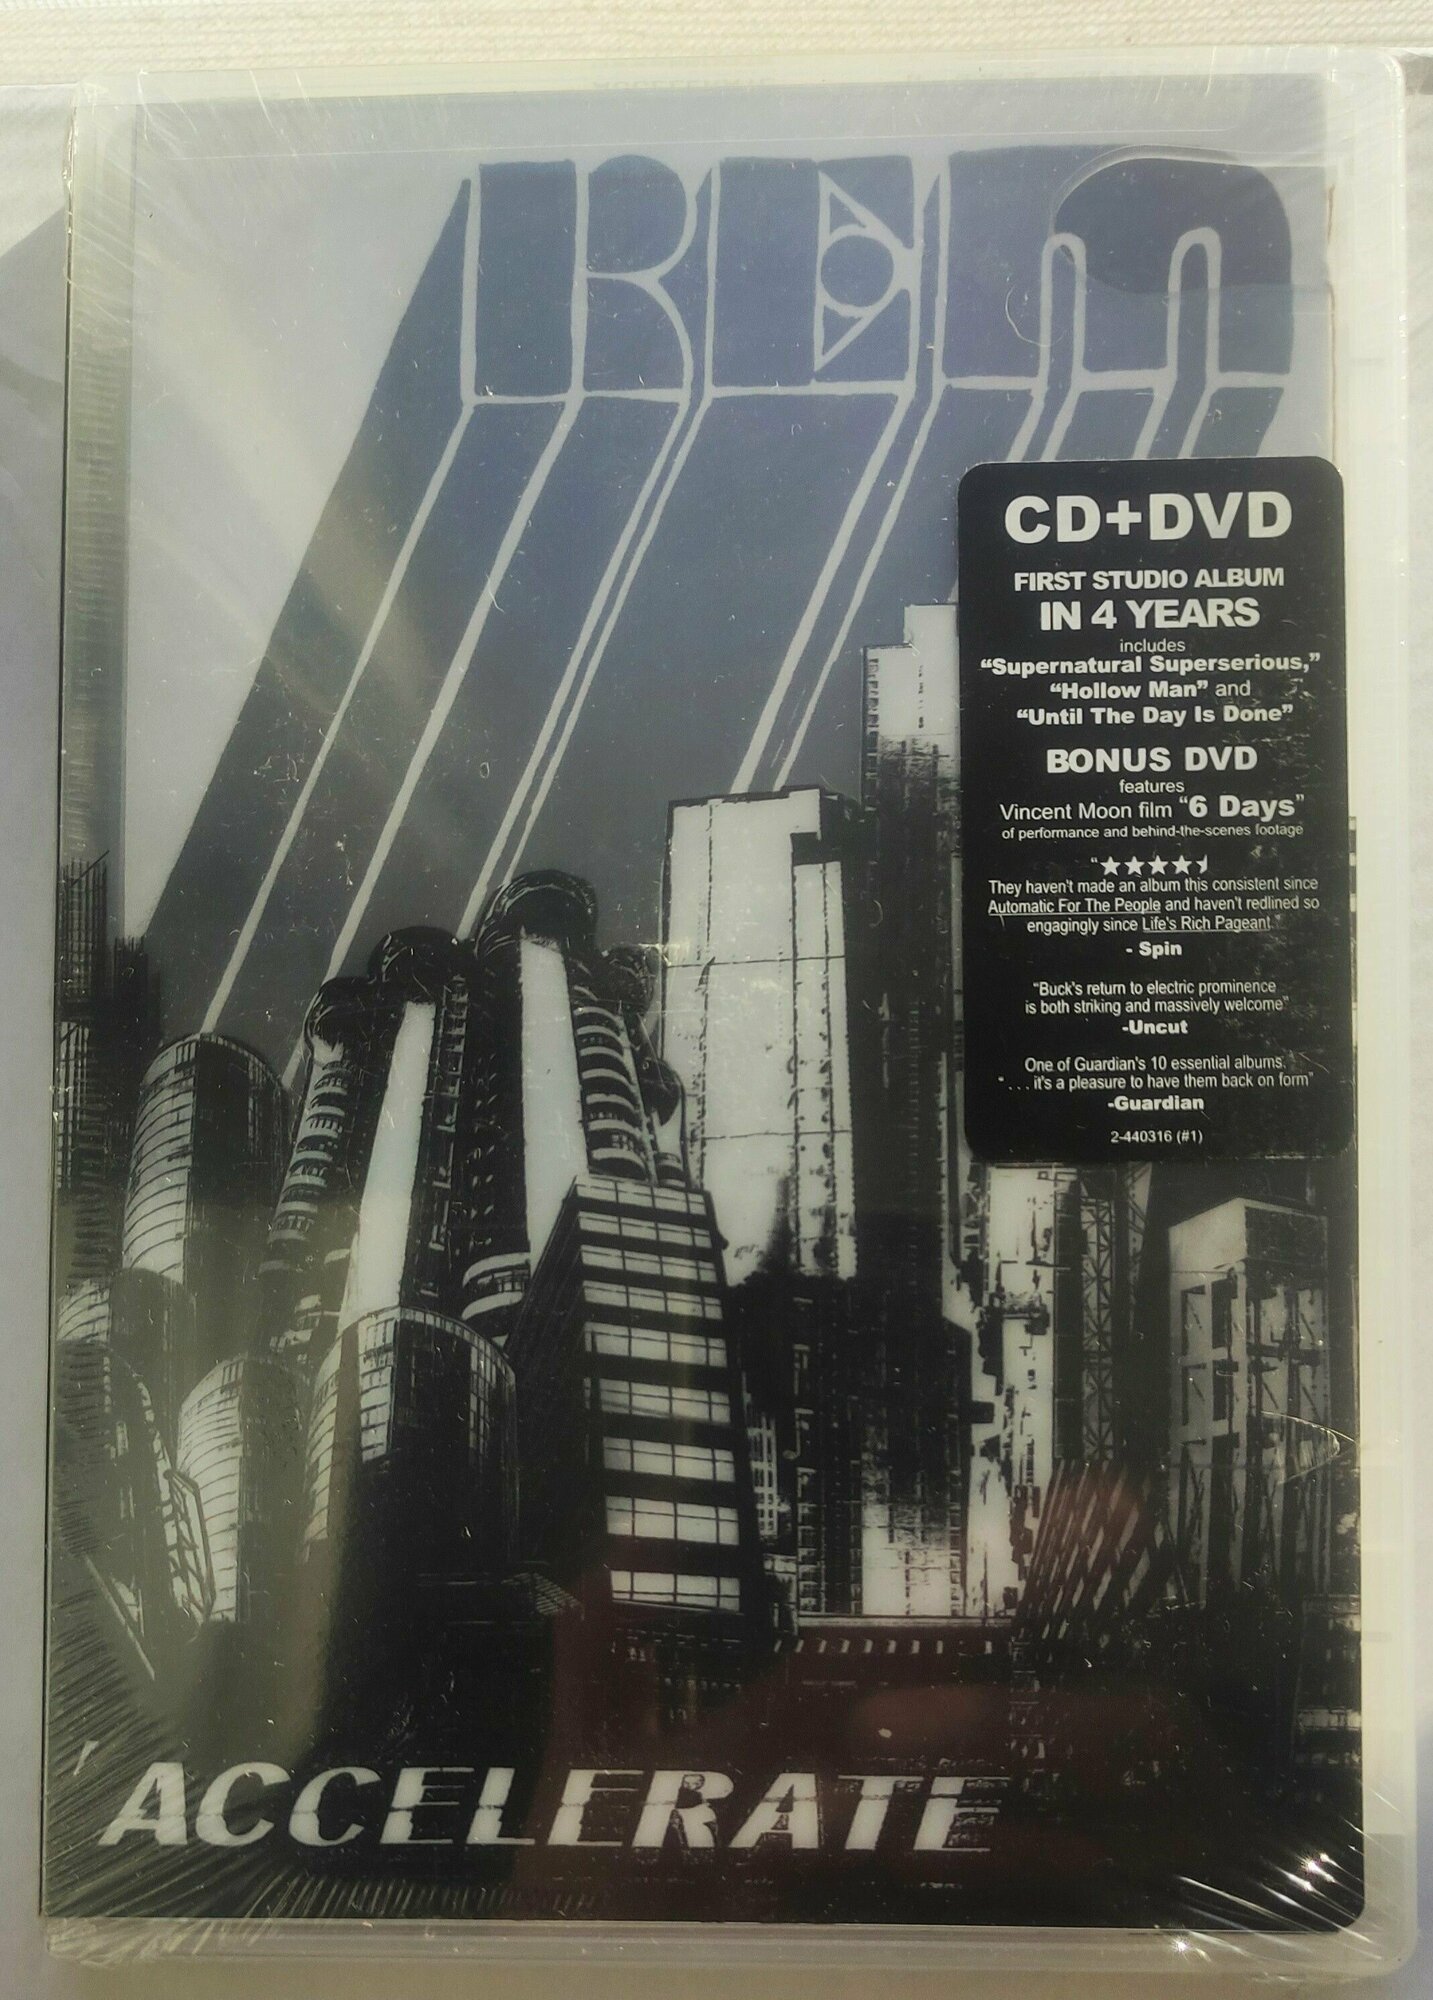 R.E.M. - Accelerate (CD+DVD)